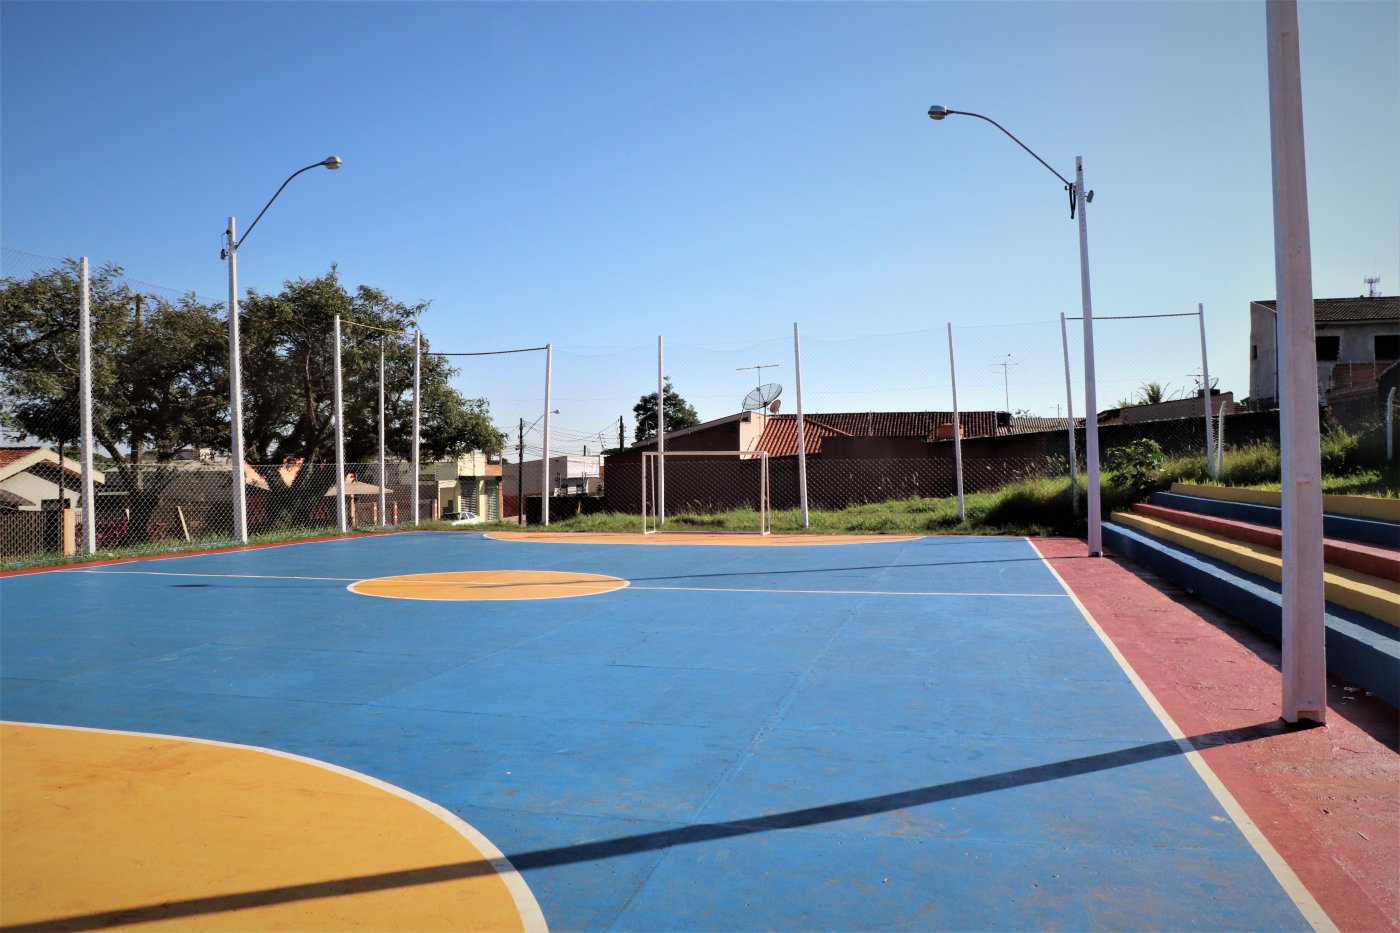 Melhorias trazem qualidade para quadra esportiva do Jardim Bandeirantes em Arapongas